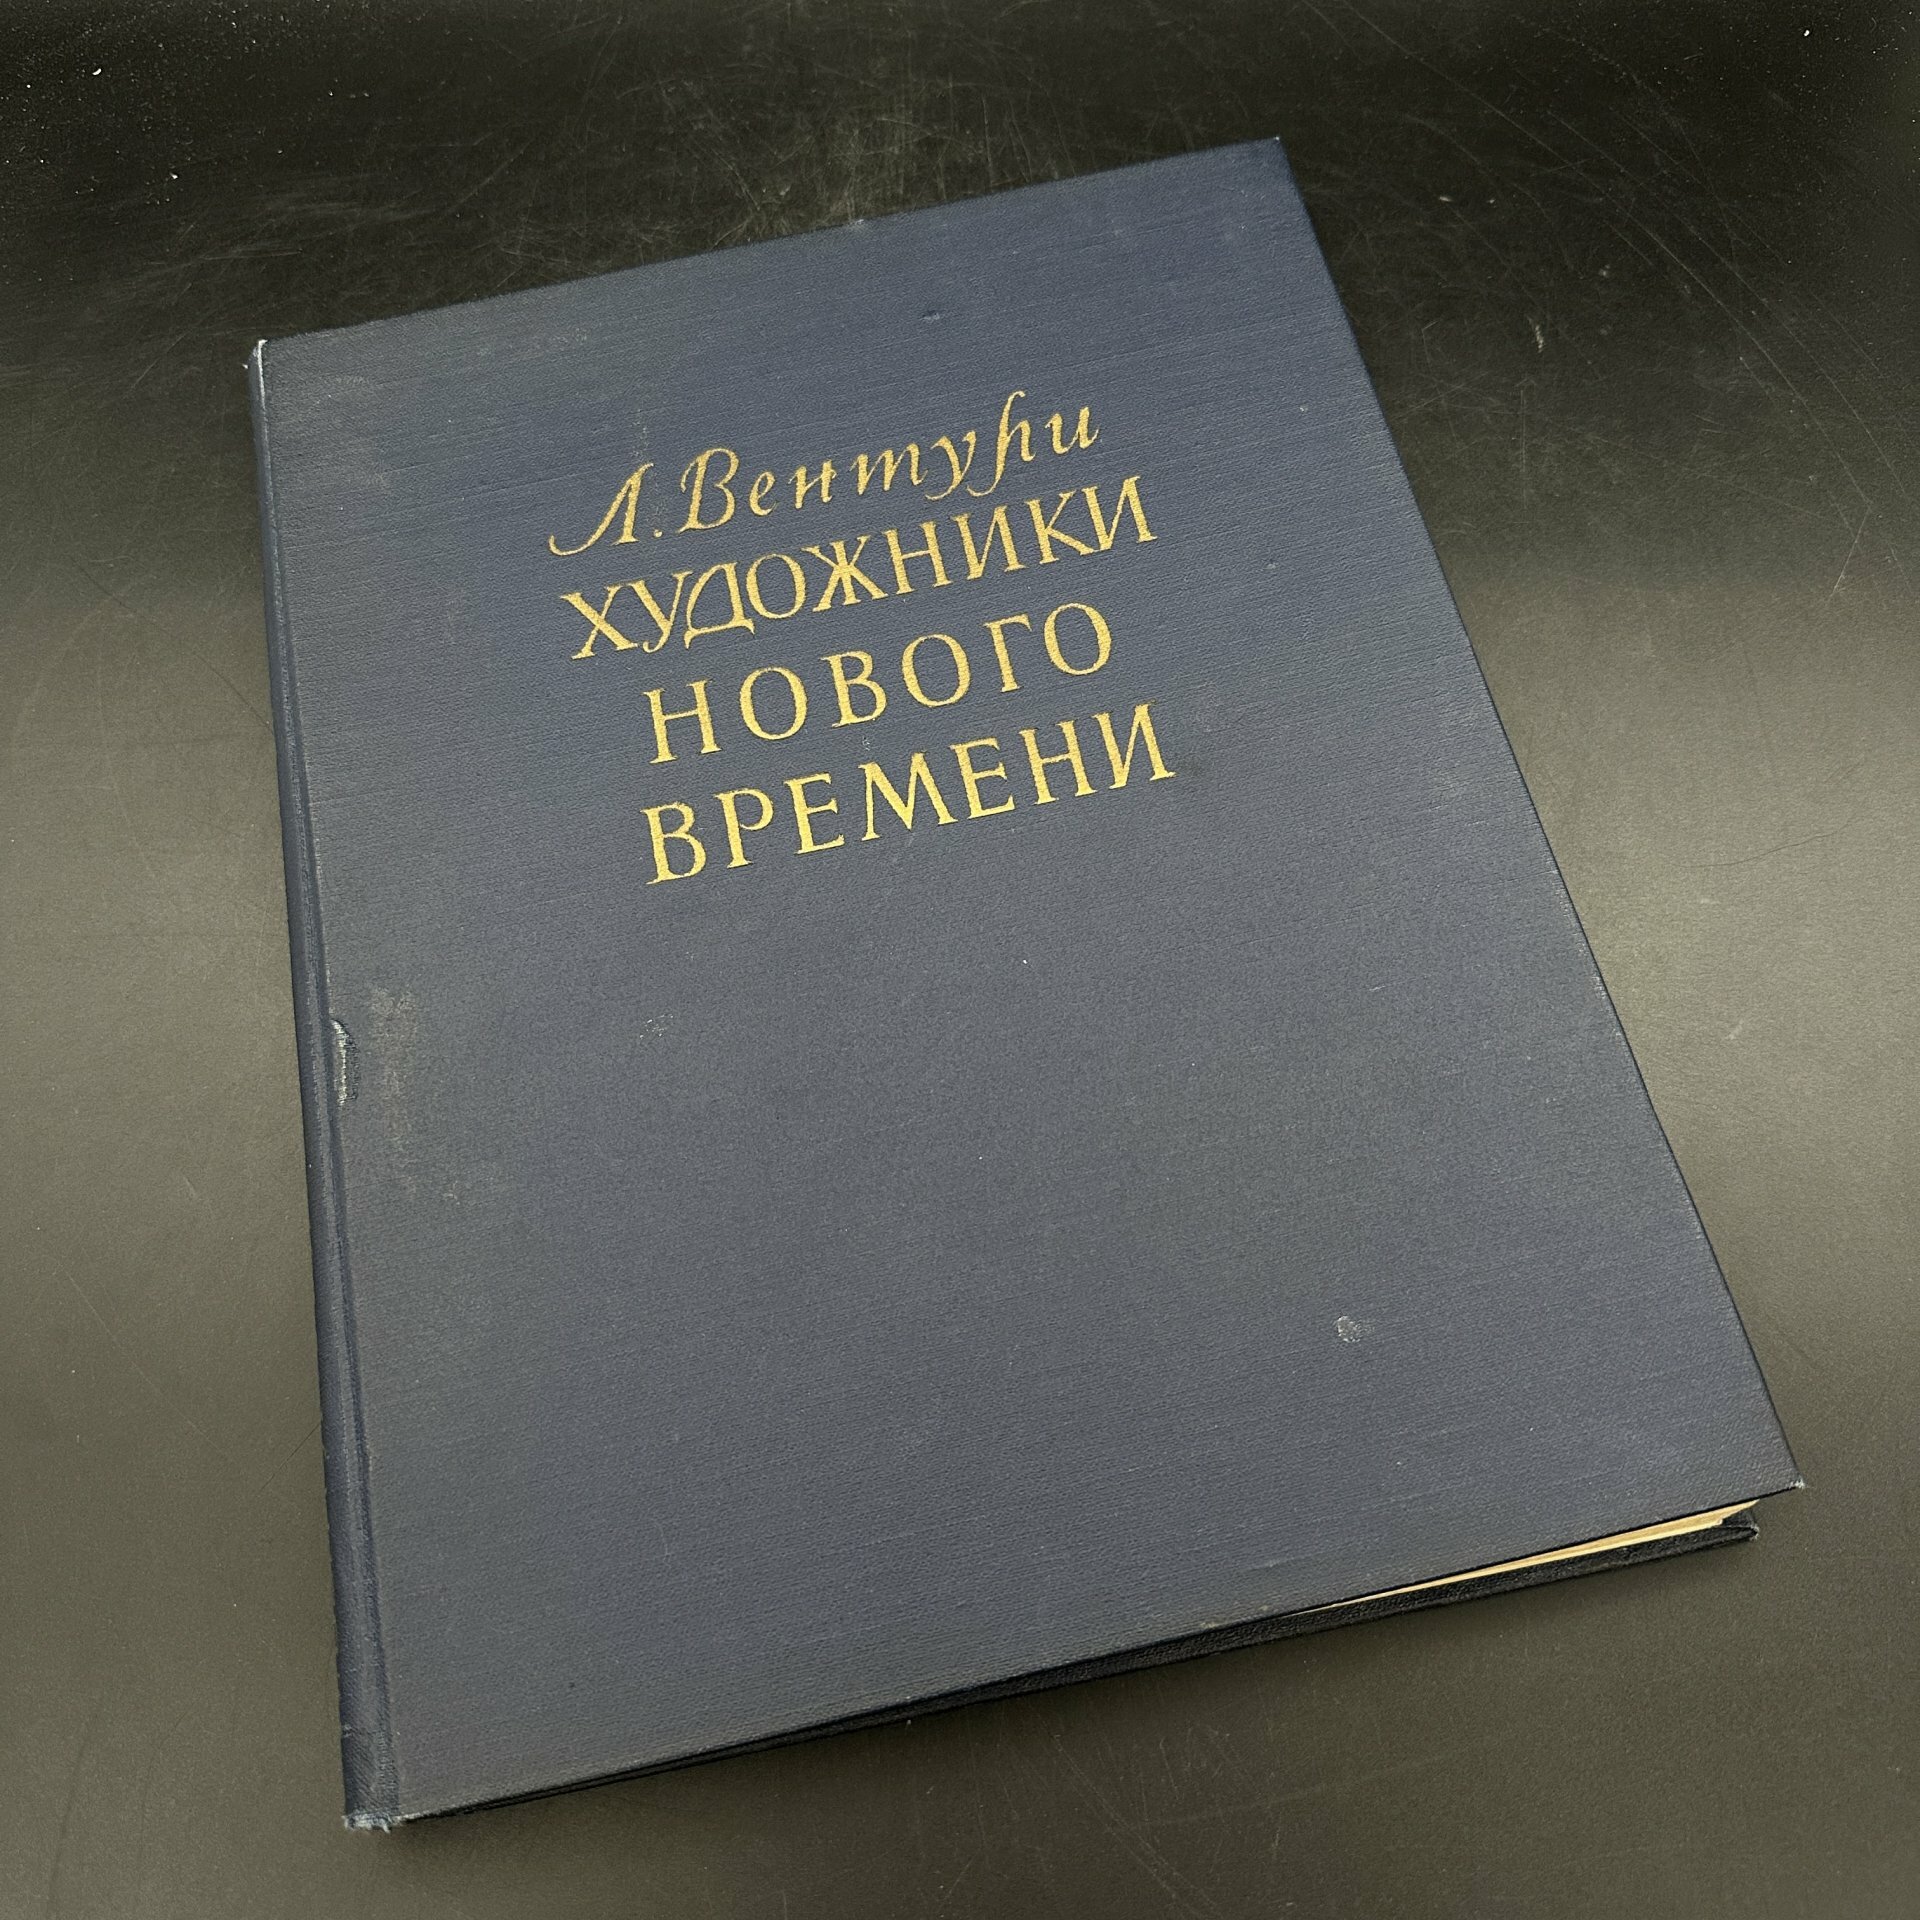 Книга "Художники нового времени" Л. Вентури бумага печать